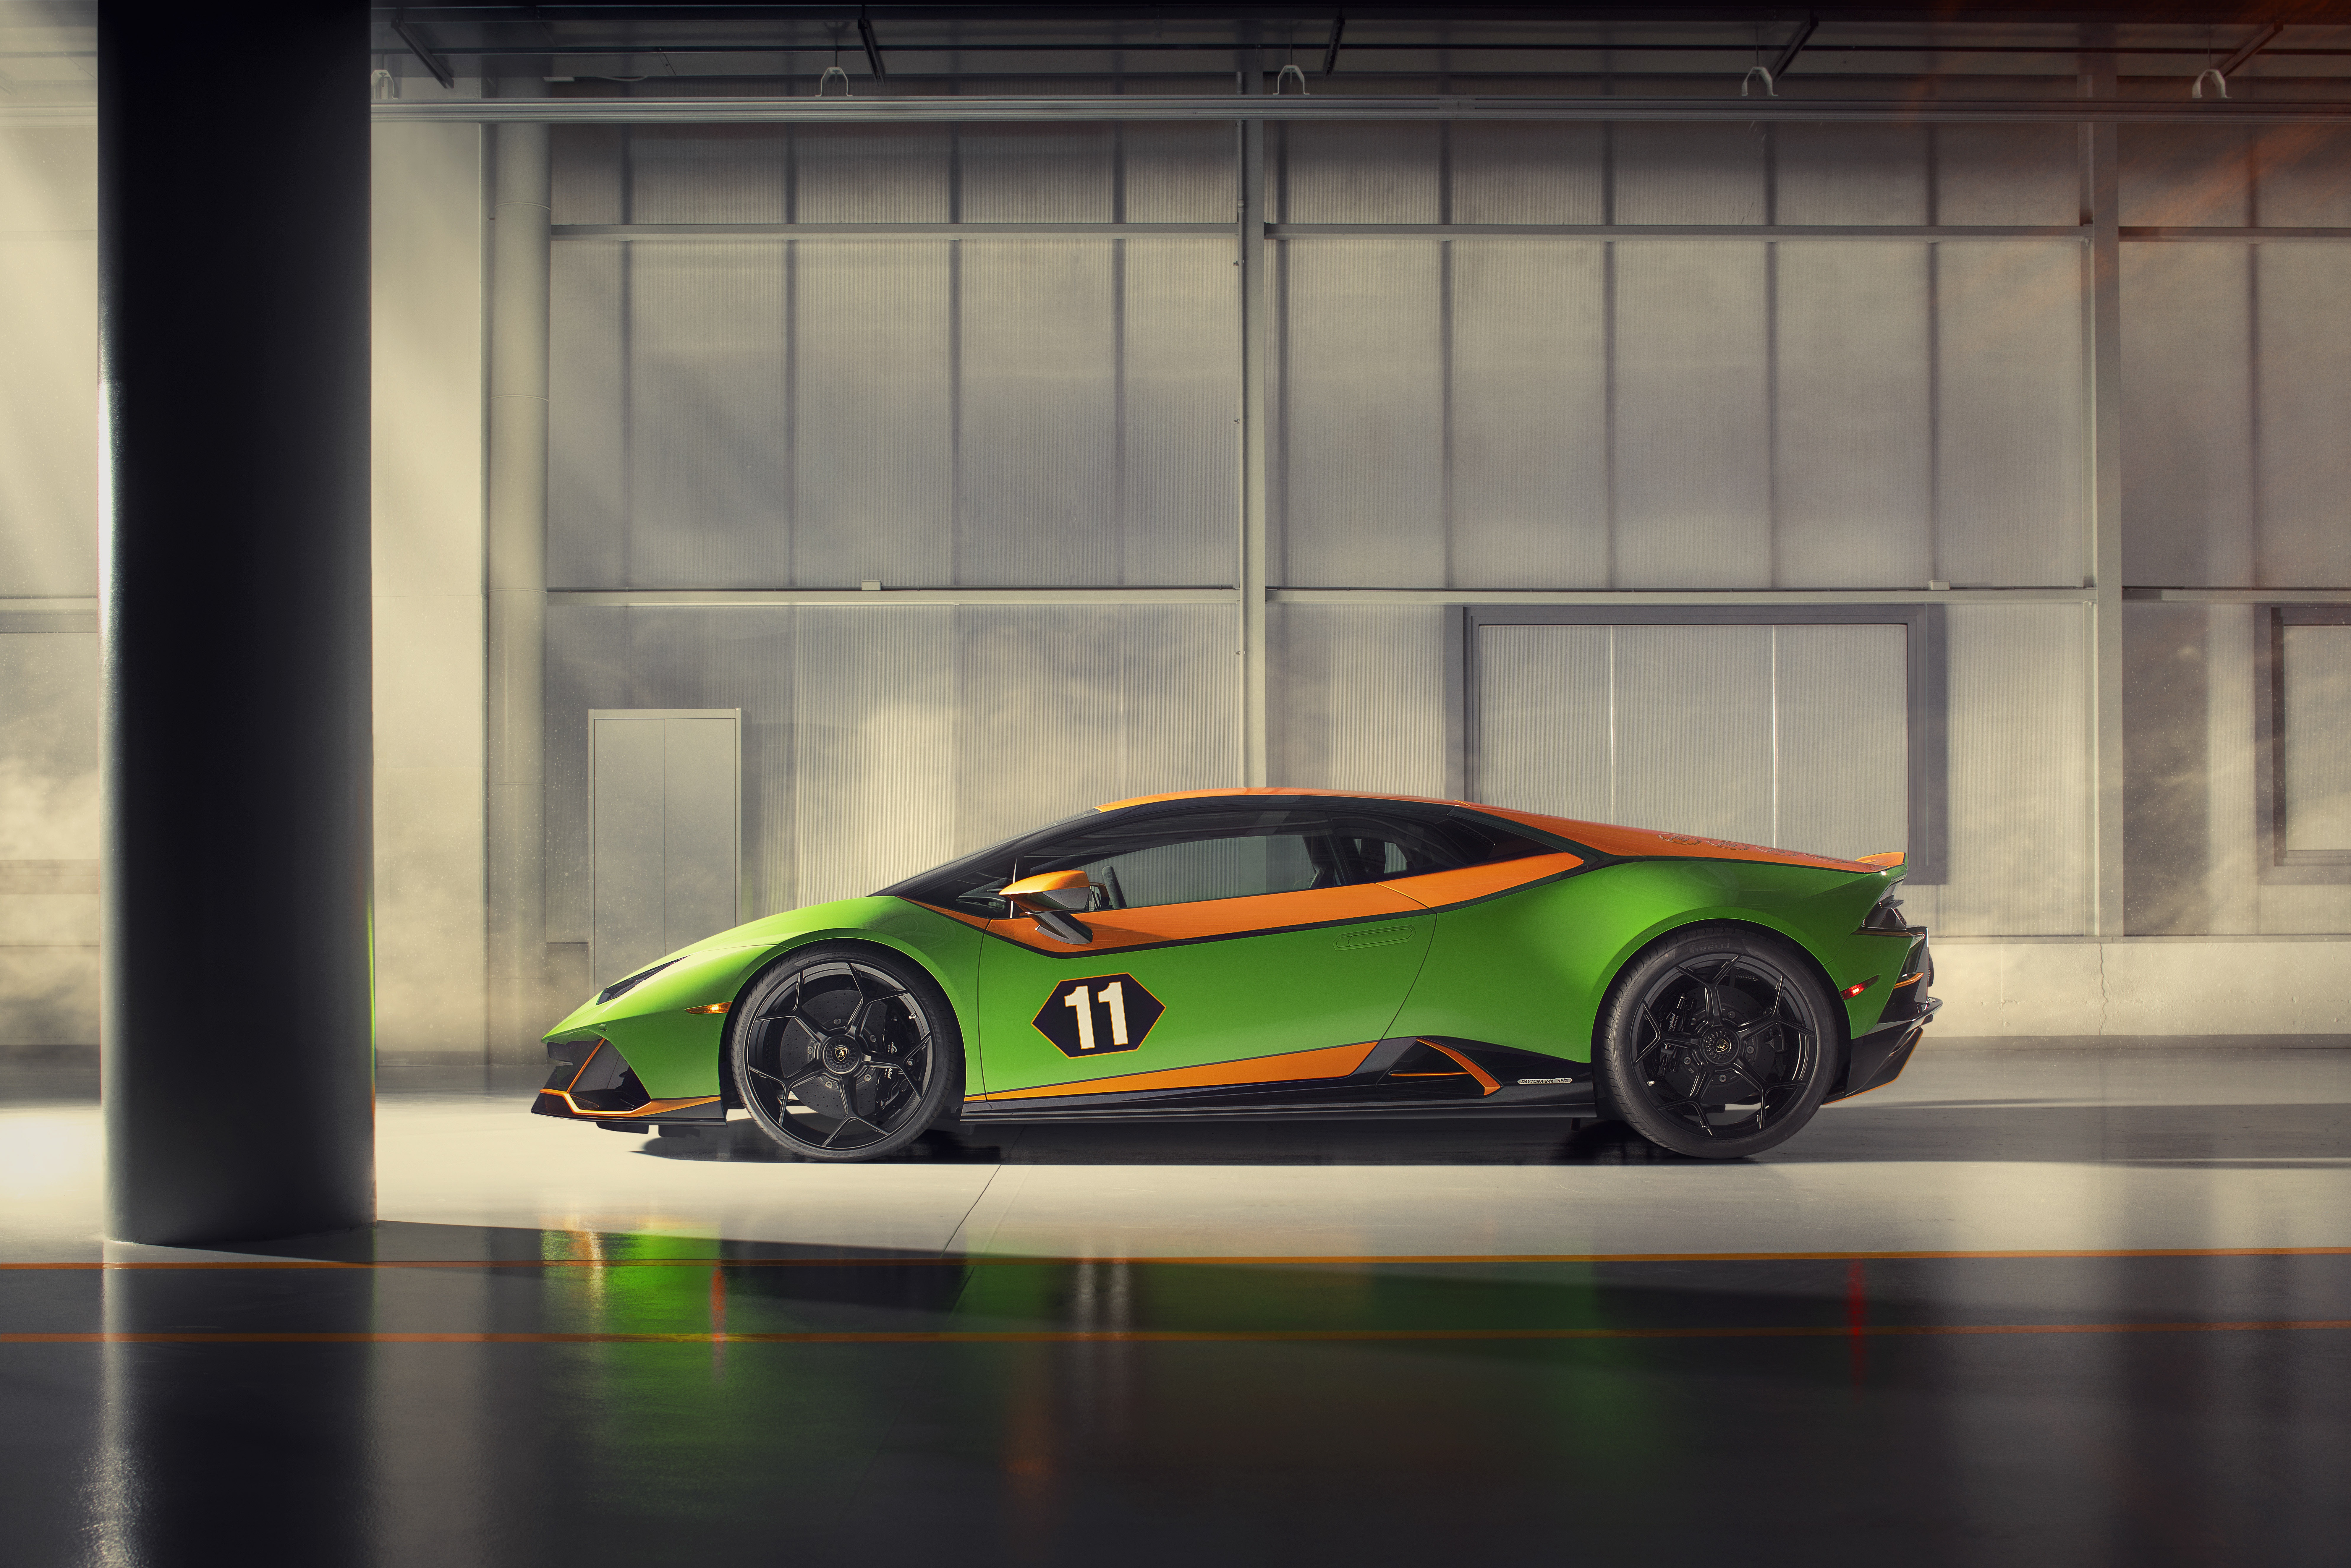 Télécharger des fonds d'écran Célébration De La Lamborghini Huracán Evo Gt HD